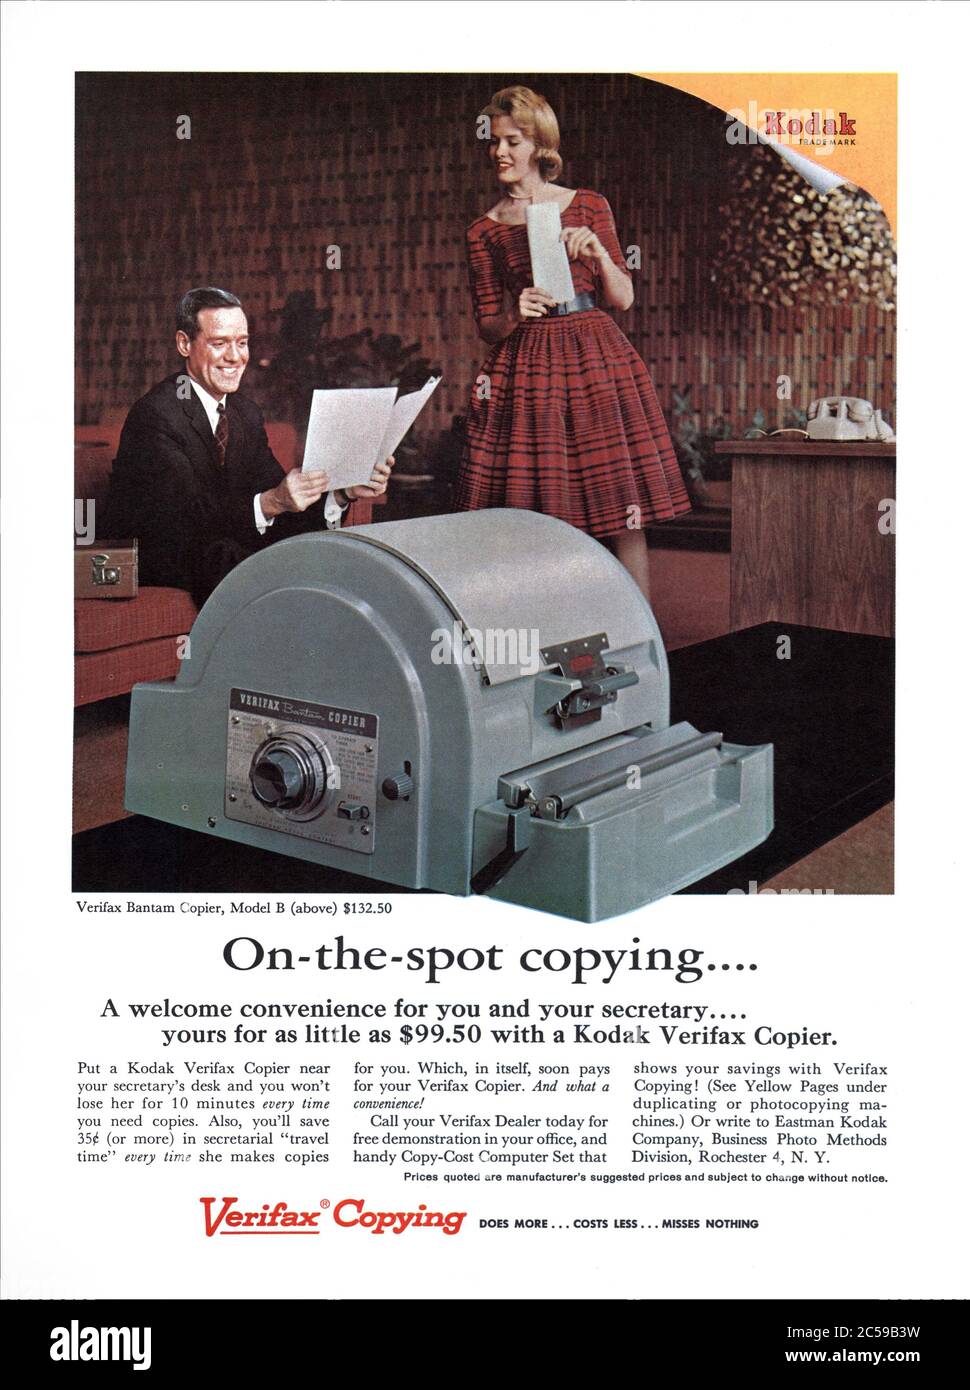 Technologies de bureau dans les années 1940 copieur professionnel Kodak Verifax Bantam ‘On La copie d'accompagnement’ Publicité presse 1947 Eastman Kodak Business photo Division des méthodes Rochester NY Etats-Unis Banque D'Images